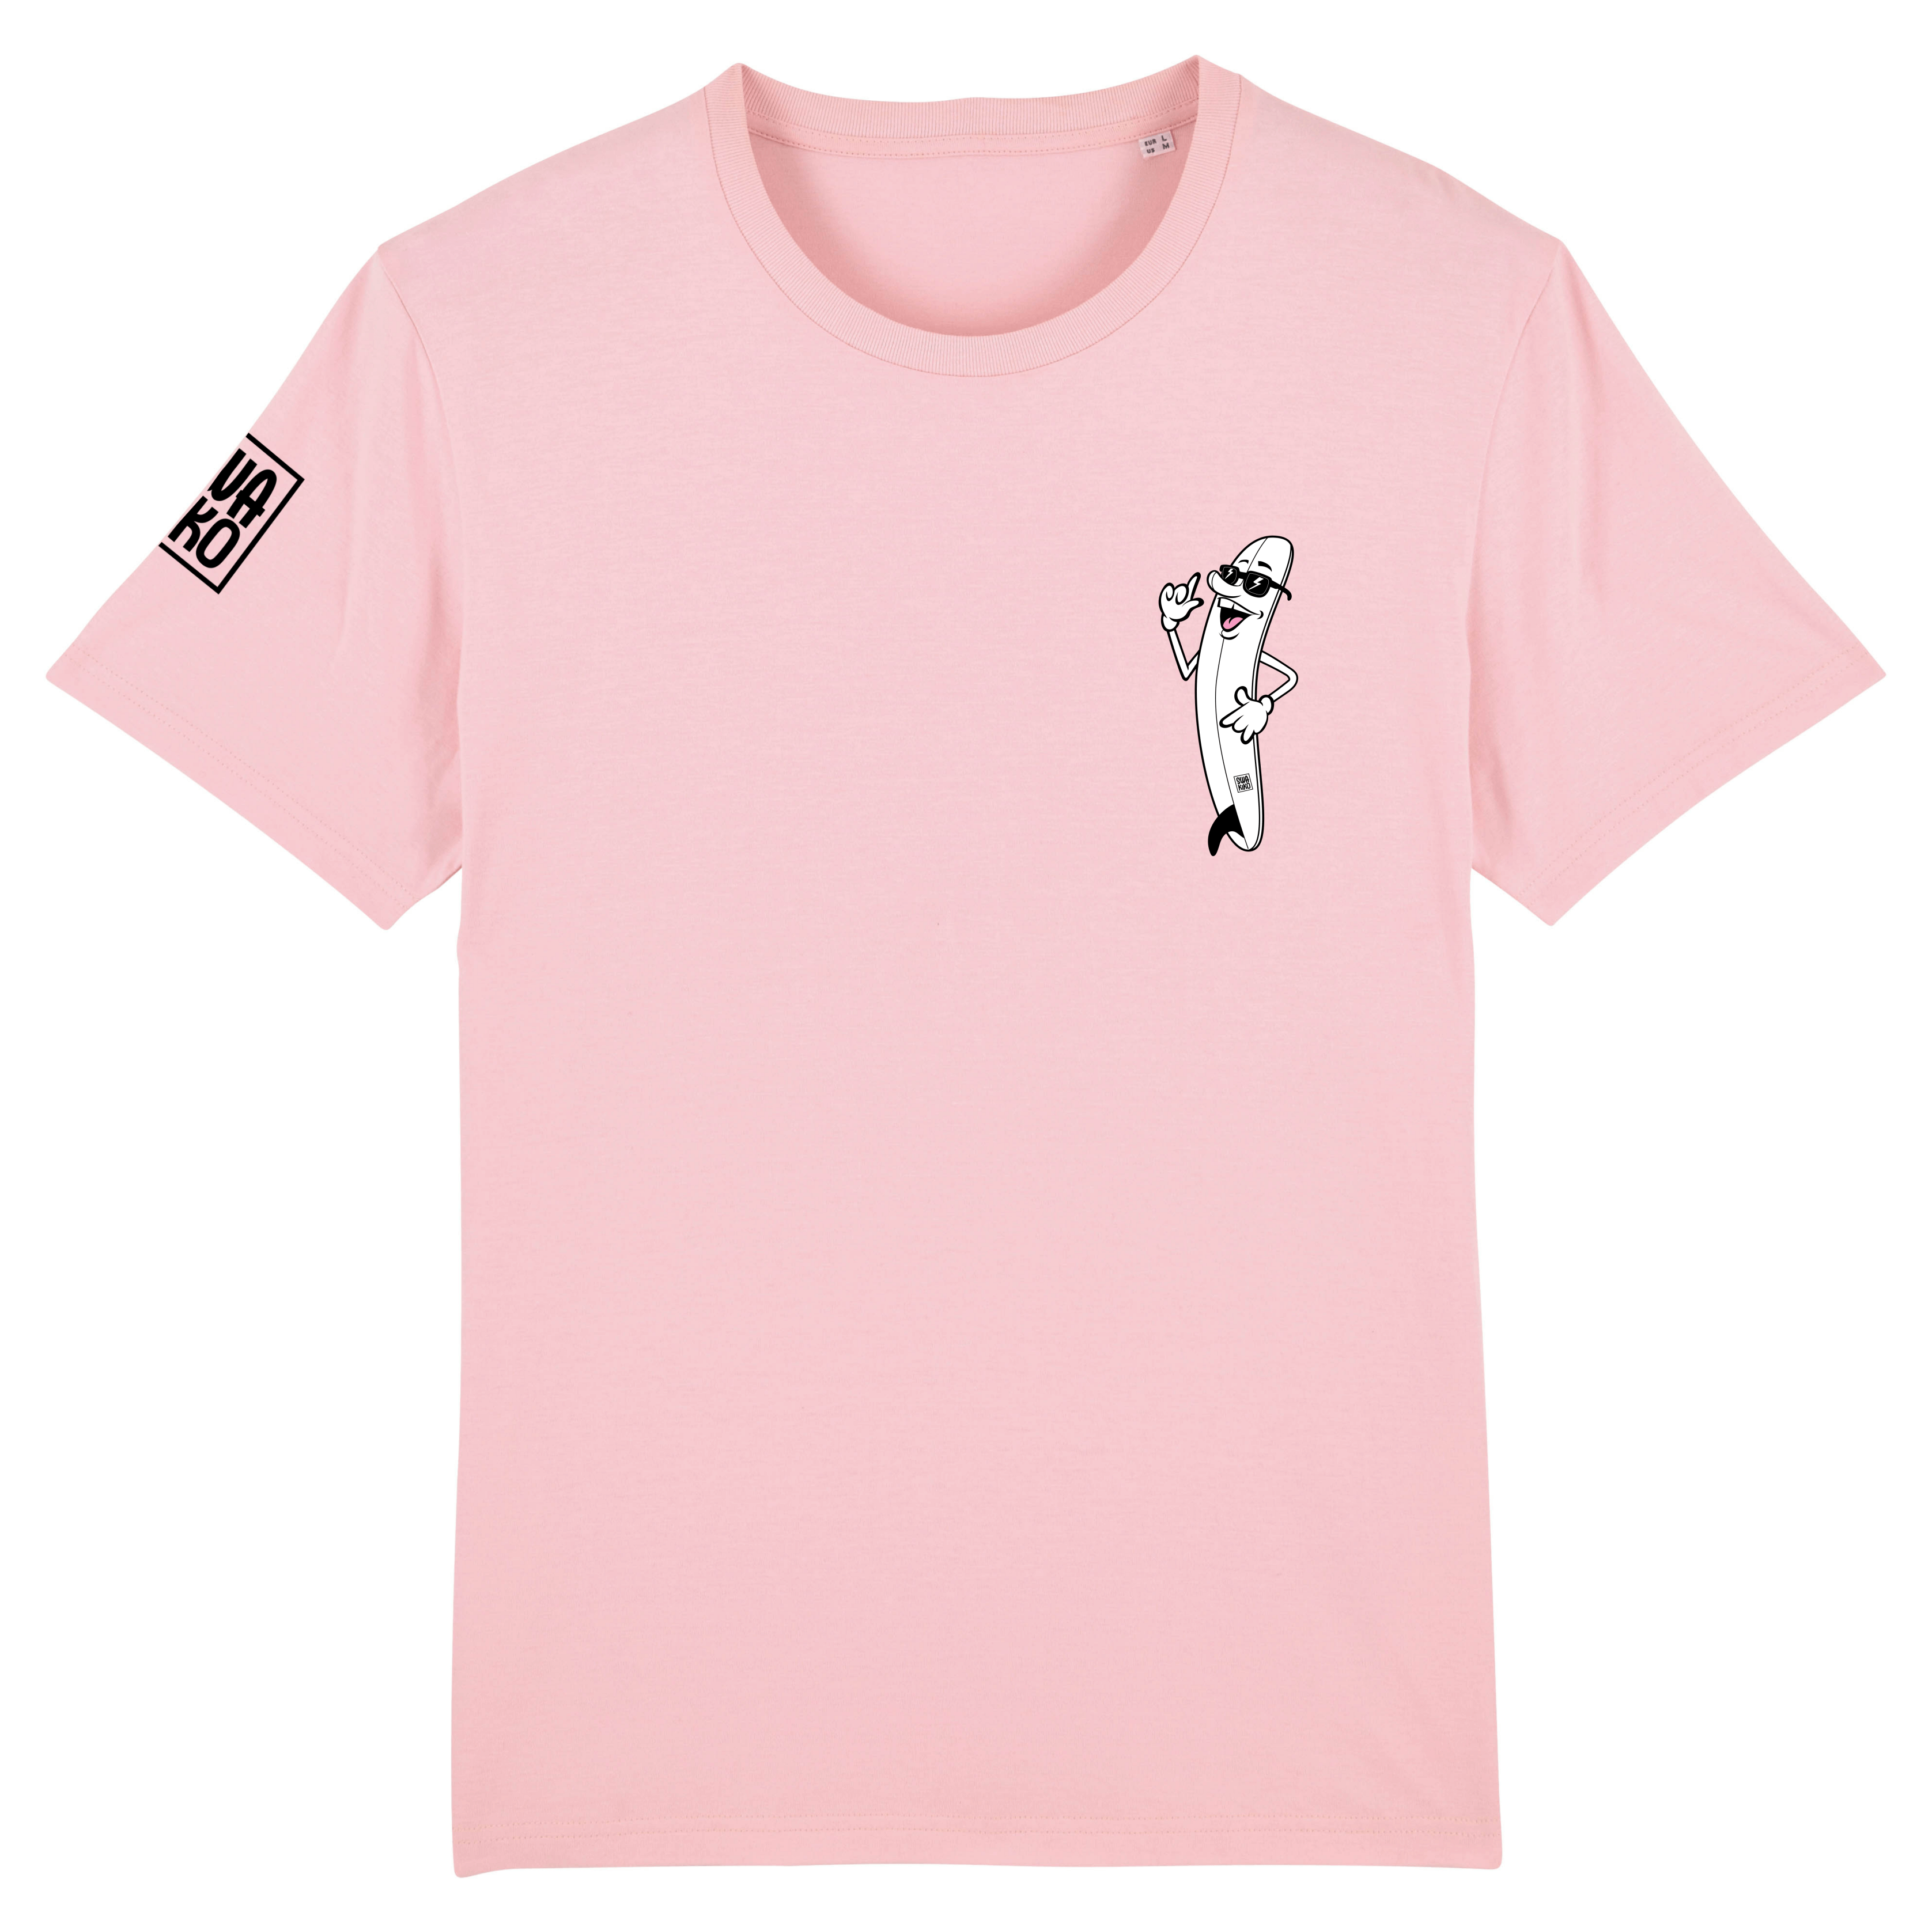 Voorkant van een roze T-shirt met op de borst een cartoon van een lachend Surfboard met SWAKiKO logo